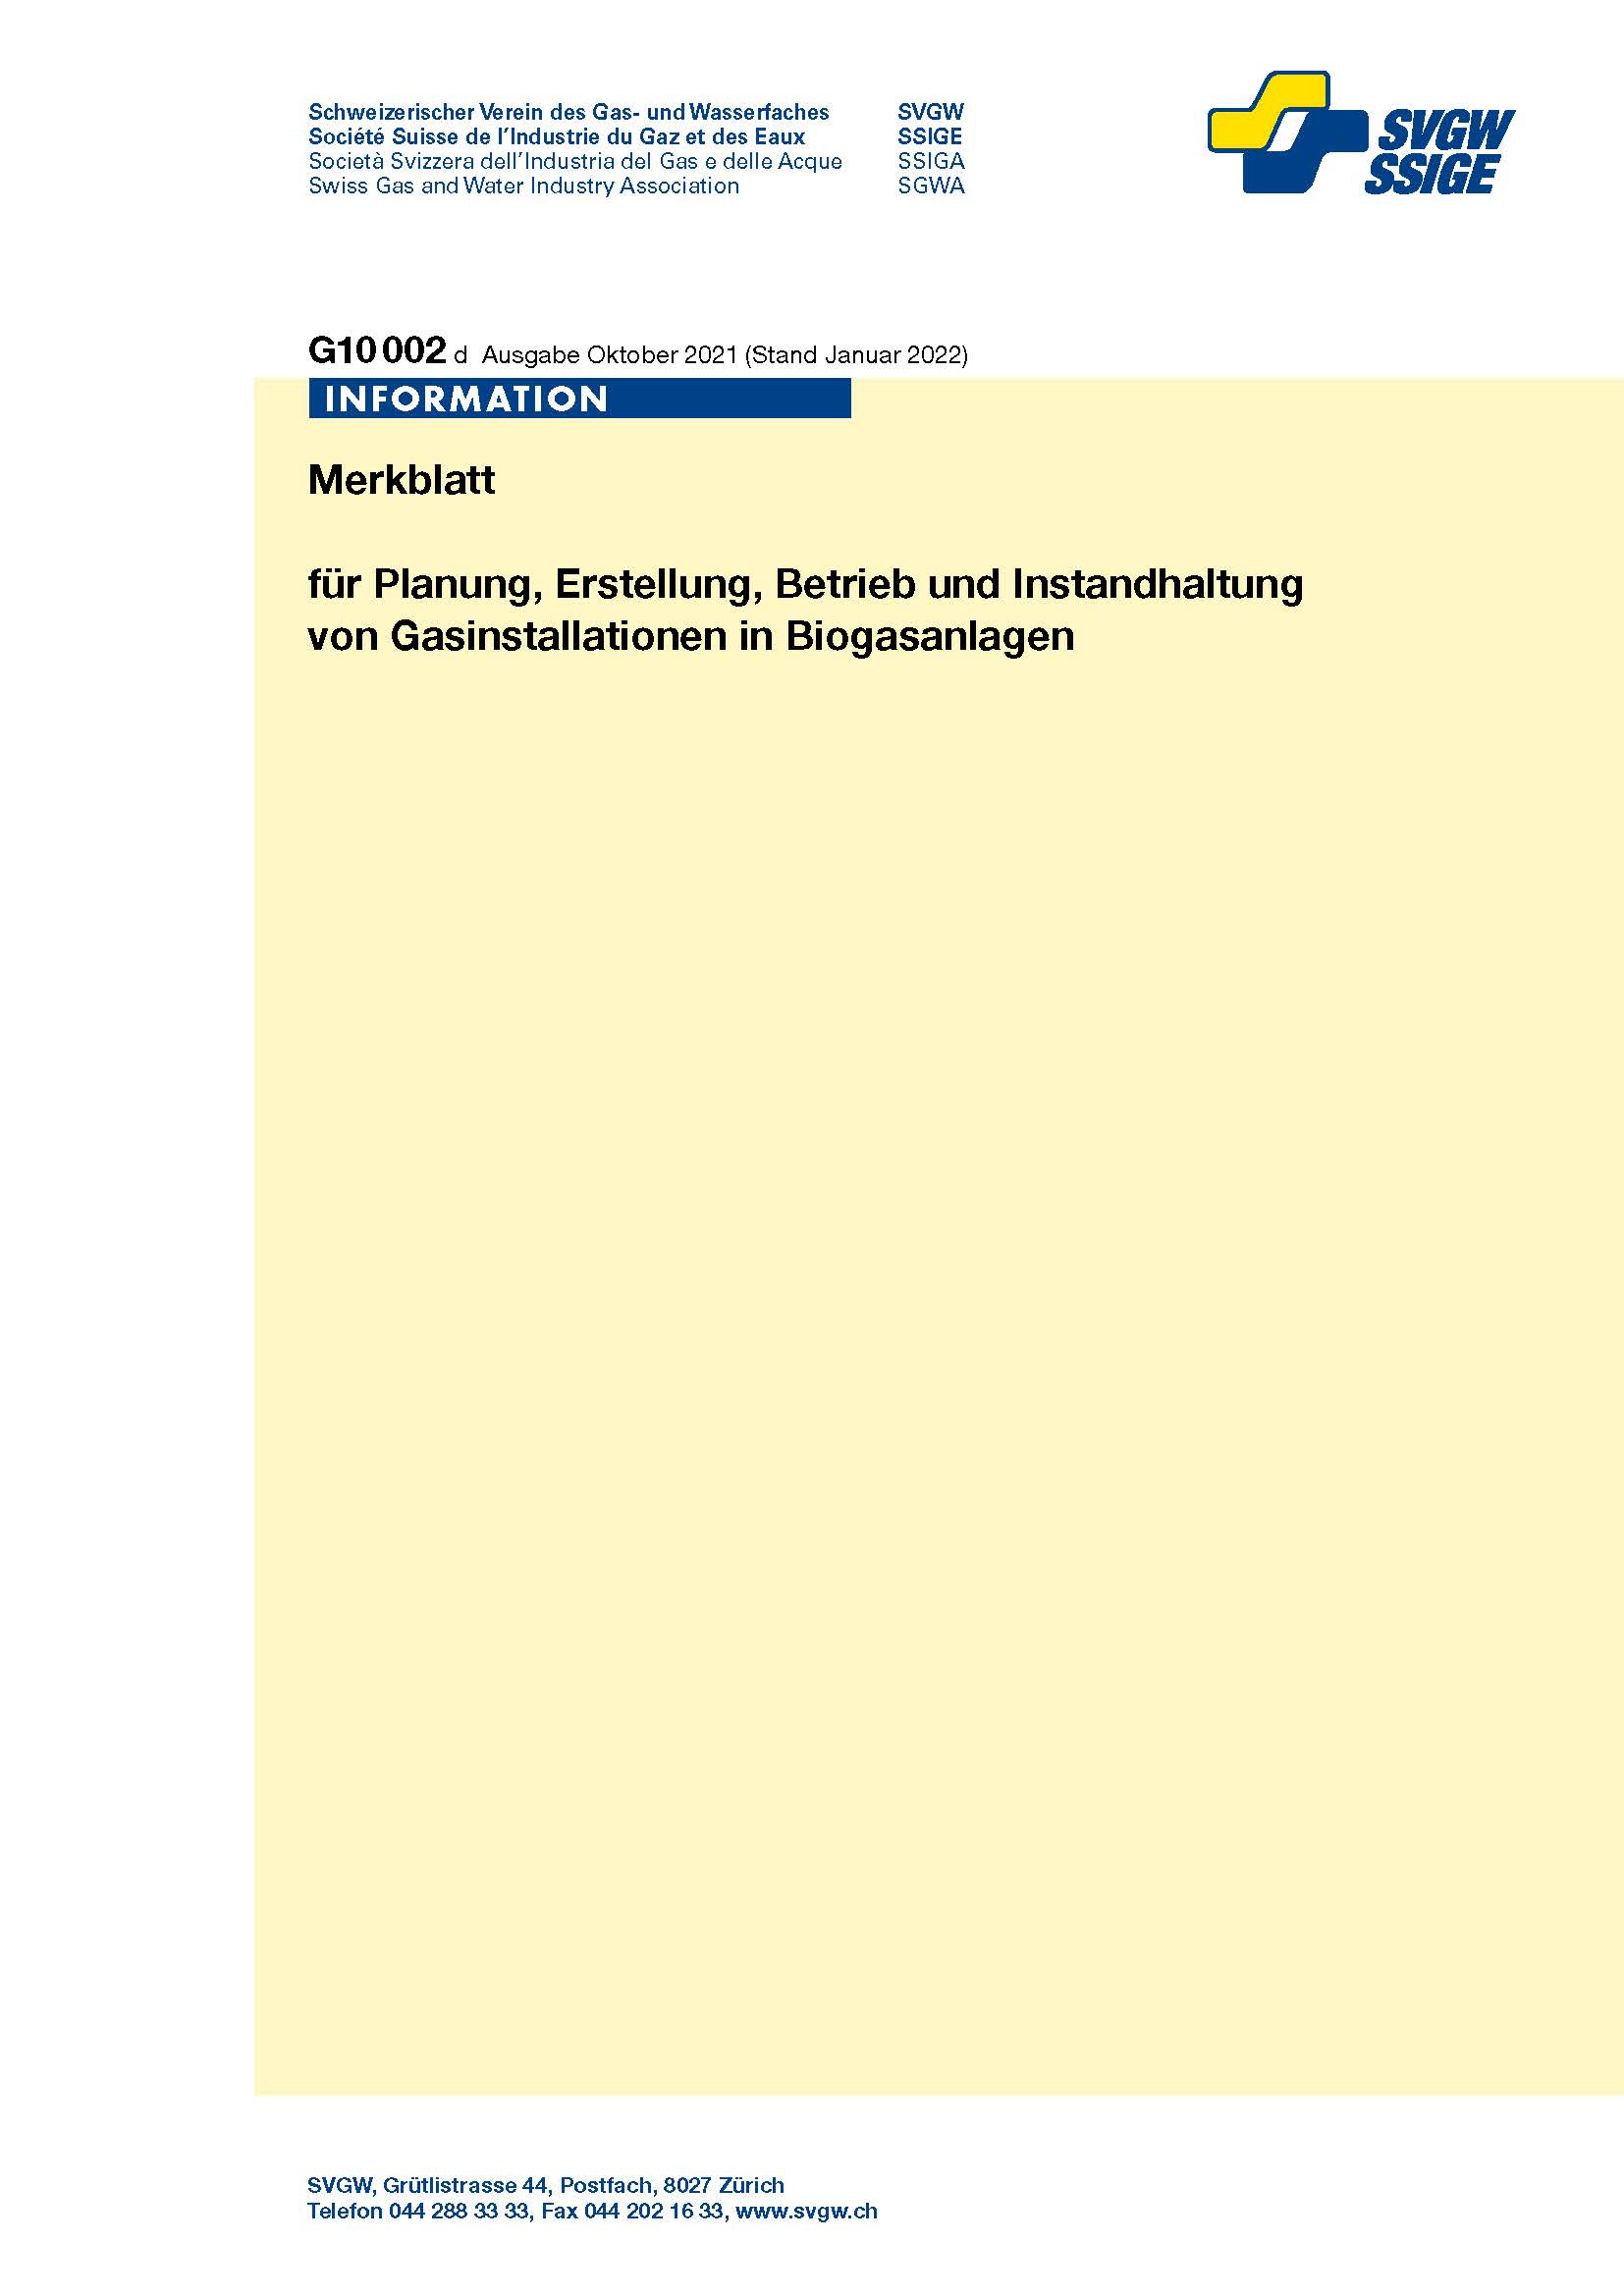 G10002 d; Merkblatt für Planung, Erstellung, Betrieb und Instandhaltung von Gasinstallationen in Biogasanlagen (Ausgabe 2021, Stand Januar 2022) (1)